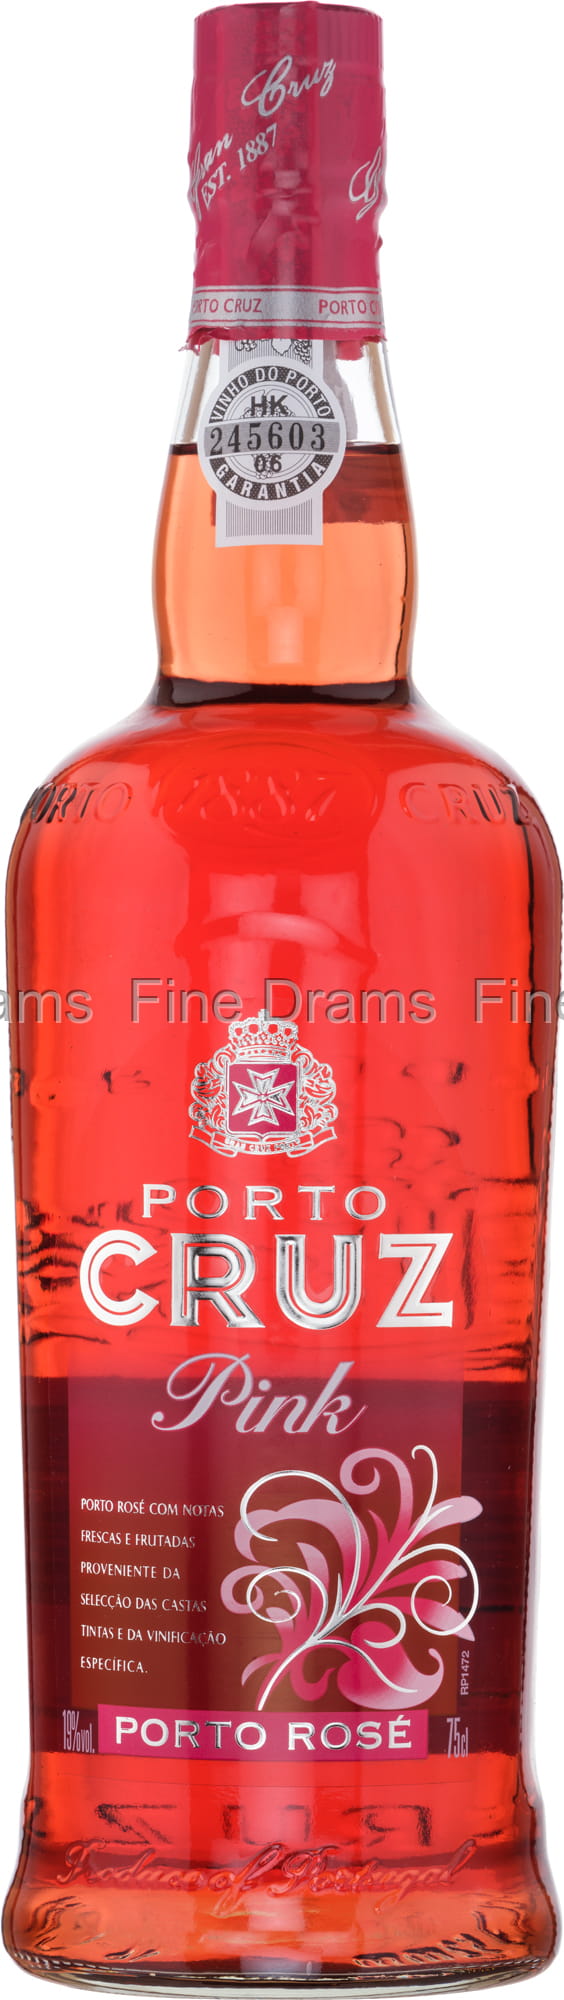 Porto Cruz Pink - Porto Cruz